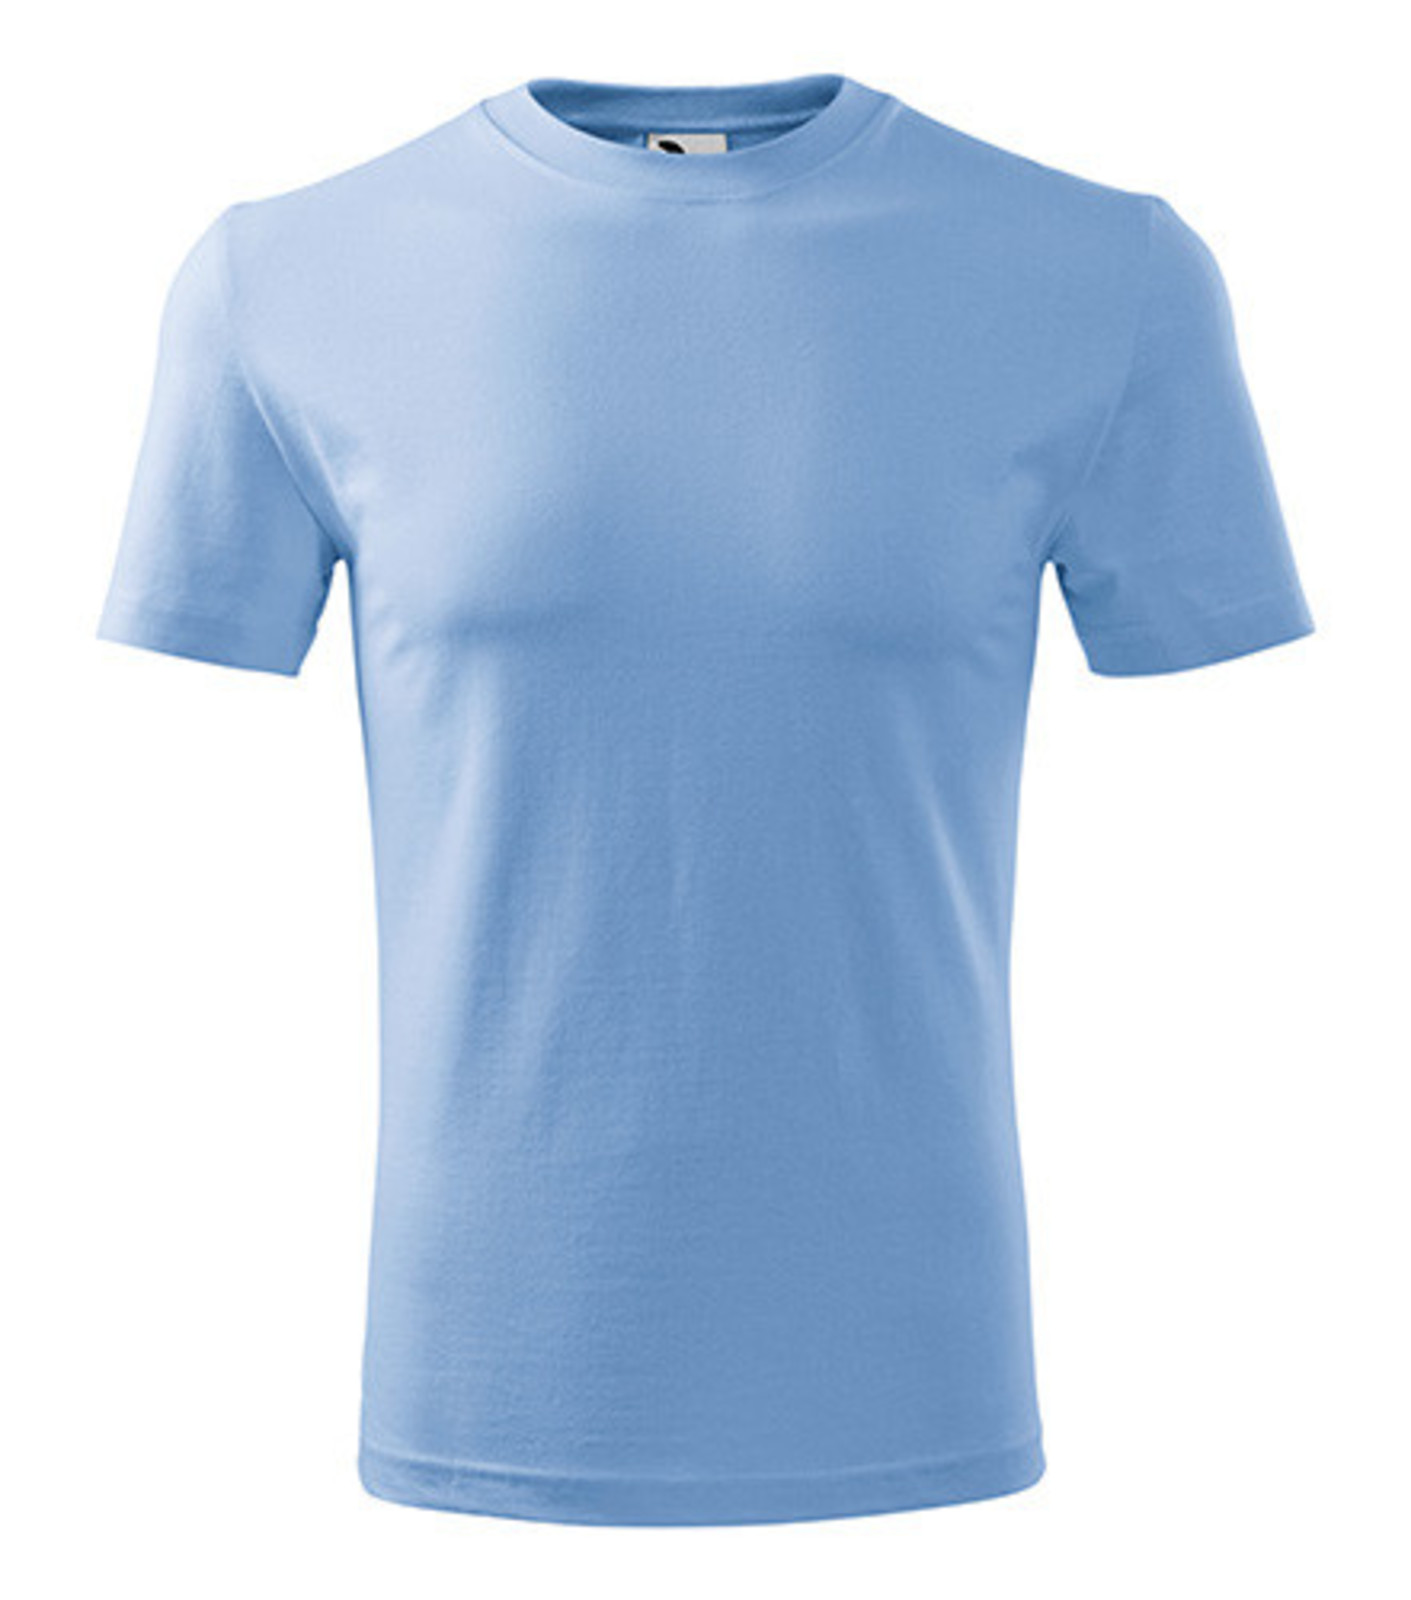 Pánske tričko Adler Classic New 132 - veľkosť: S, farba: nebesky modrá